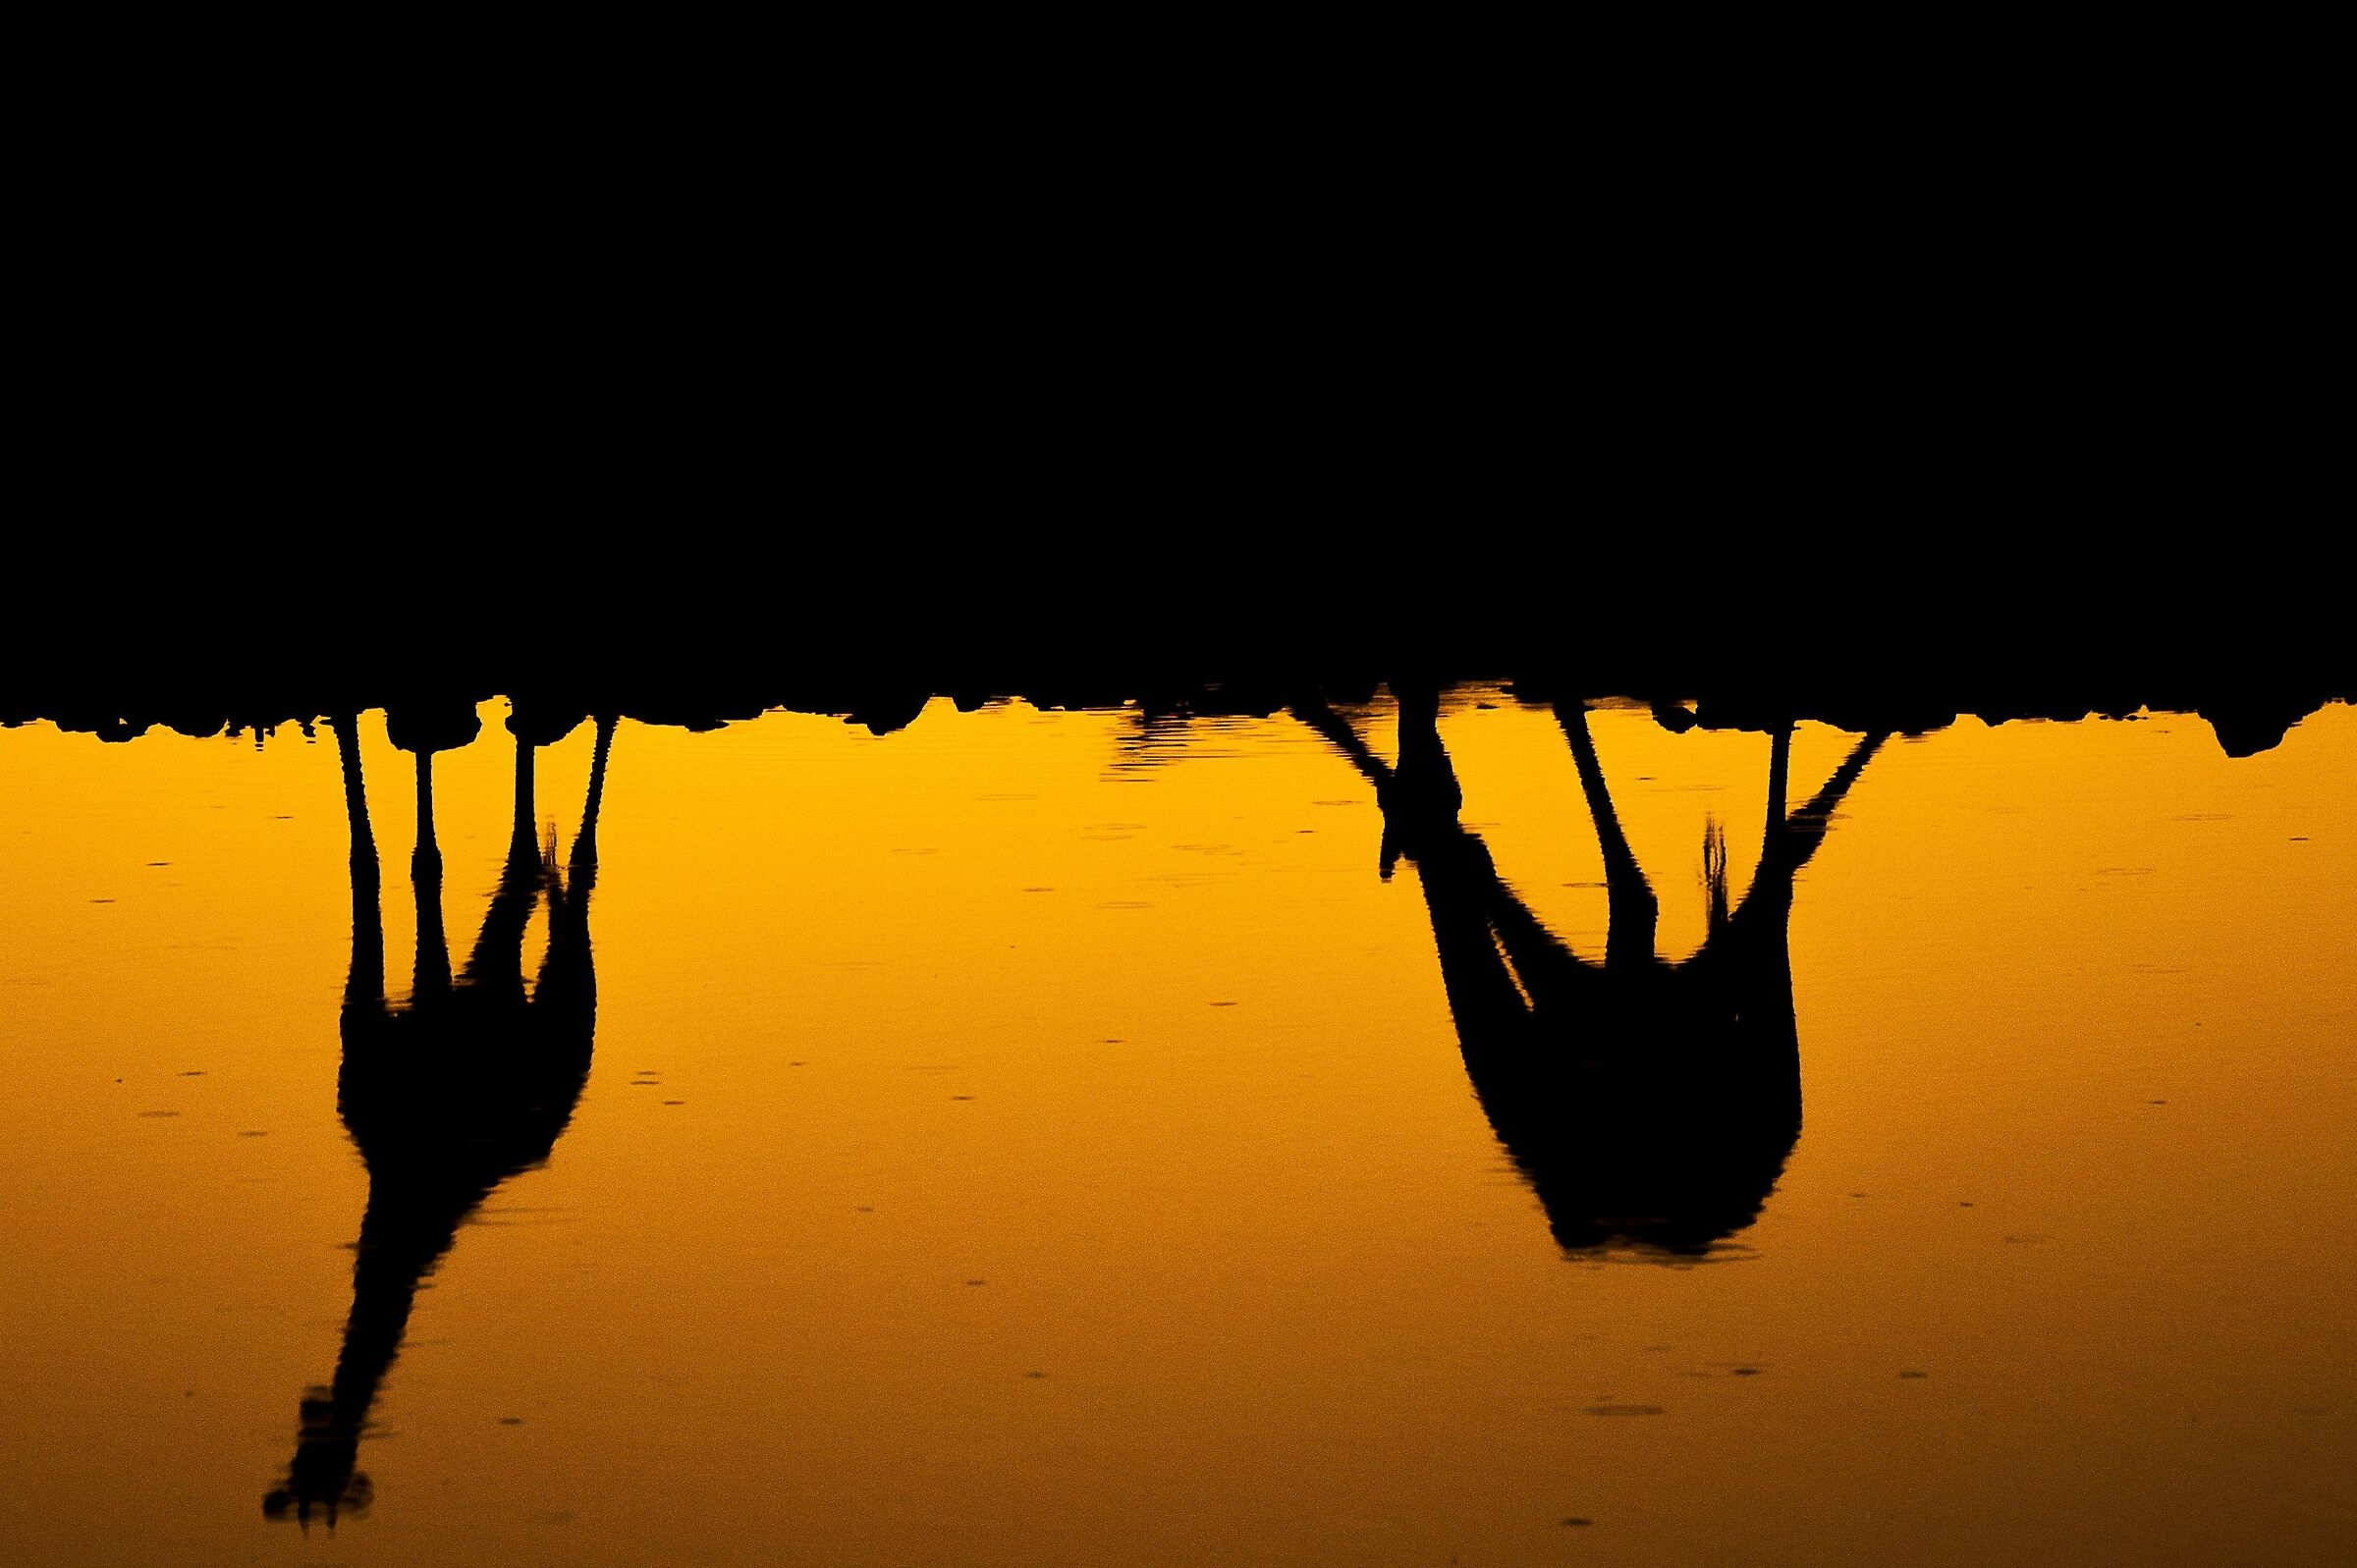 Il sottosopra: tramonto con giraffe assetate...